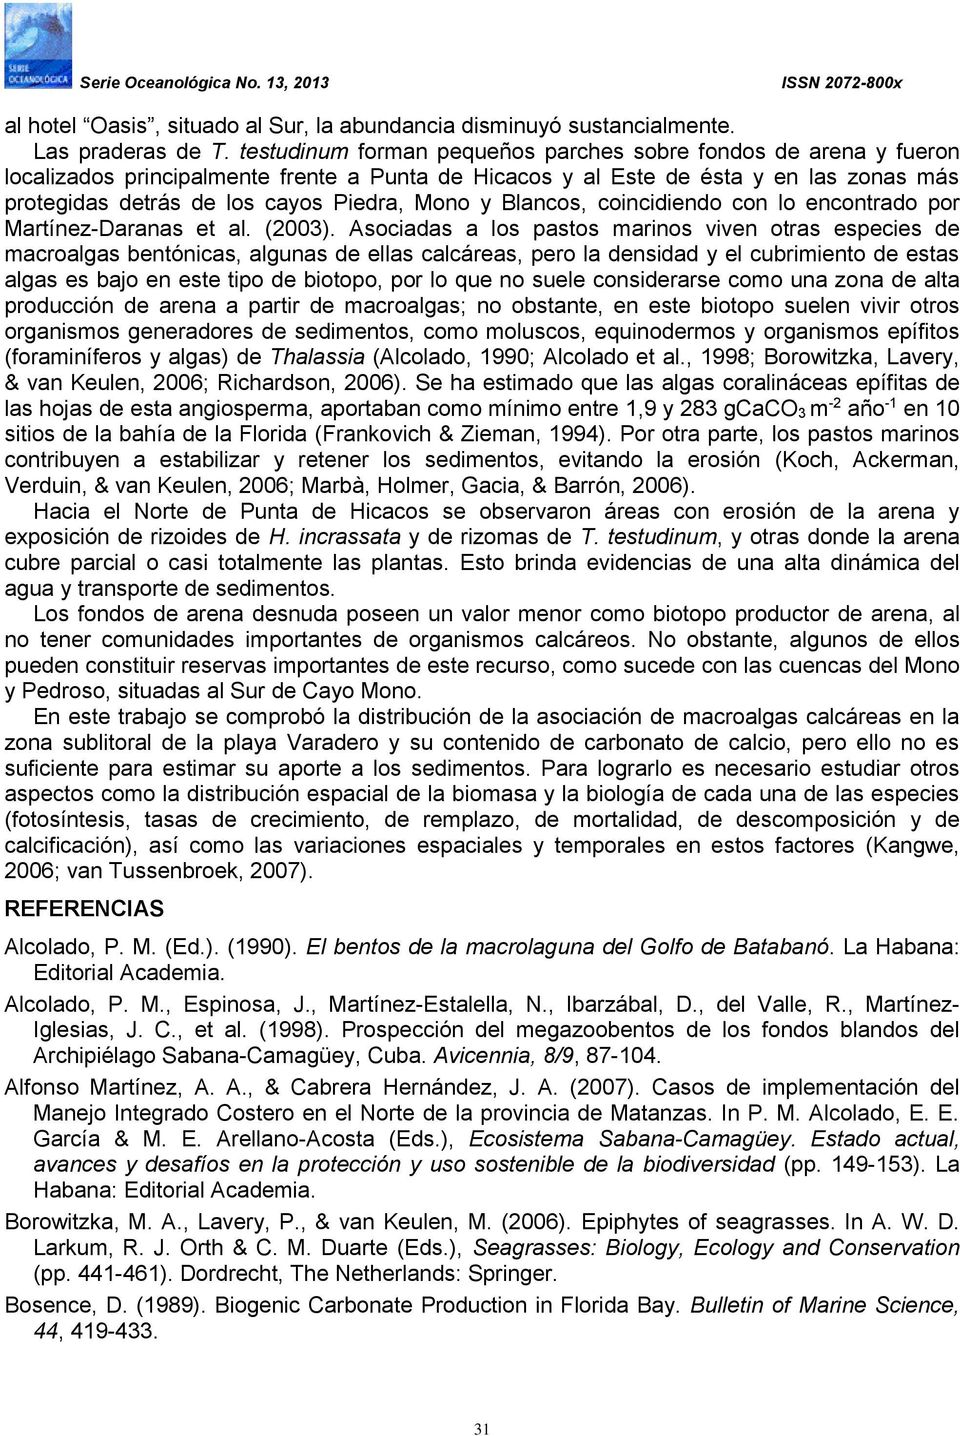 y Blancos, coincidiendo con lo encontrado por Martínez-Daranas et al. (2003).